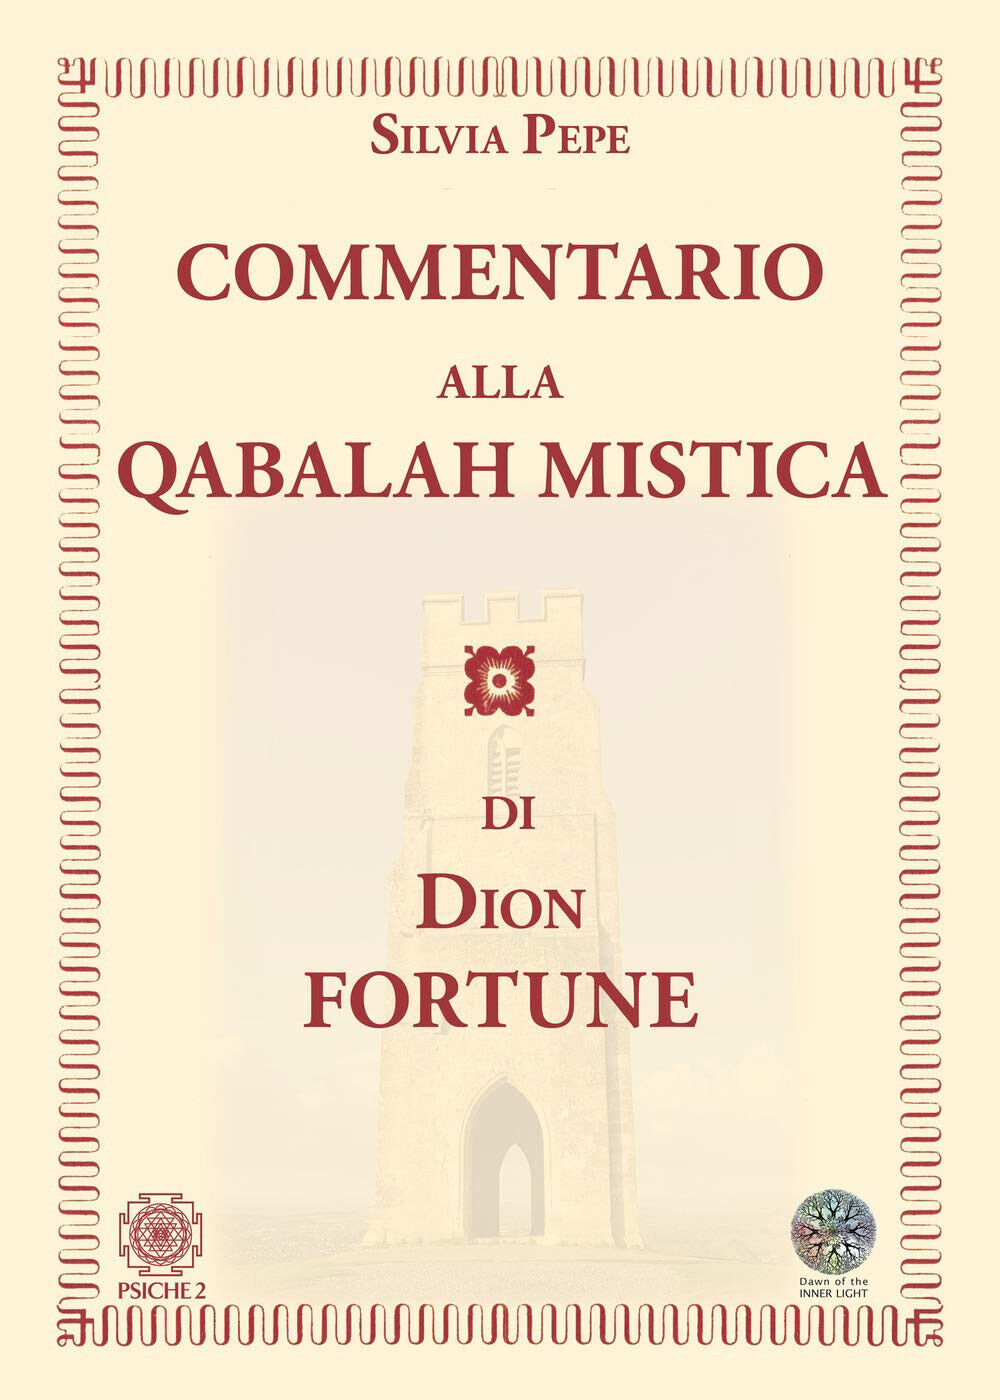 Commentario alla Qabalah mistica di Dion Fortune - Silvia Pepe - Psiche 2, 2020